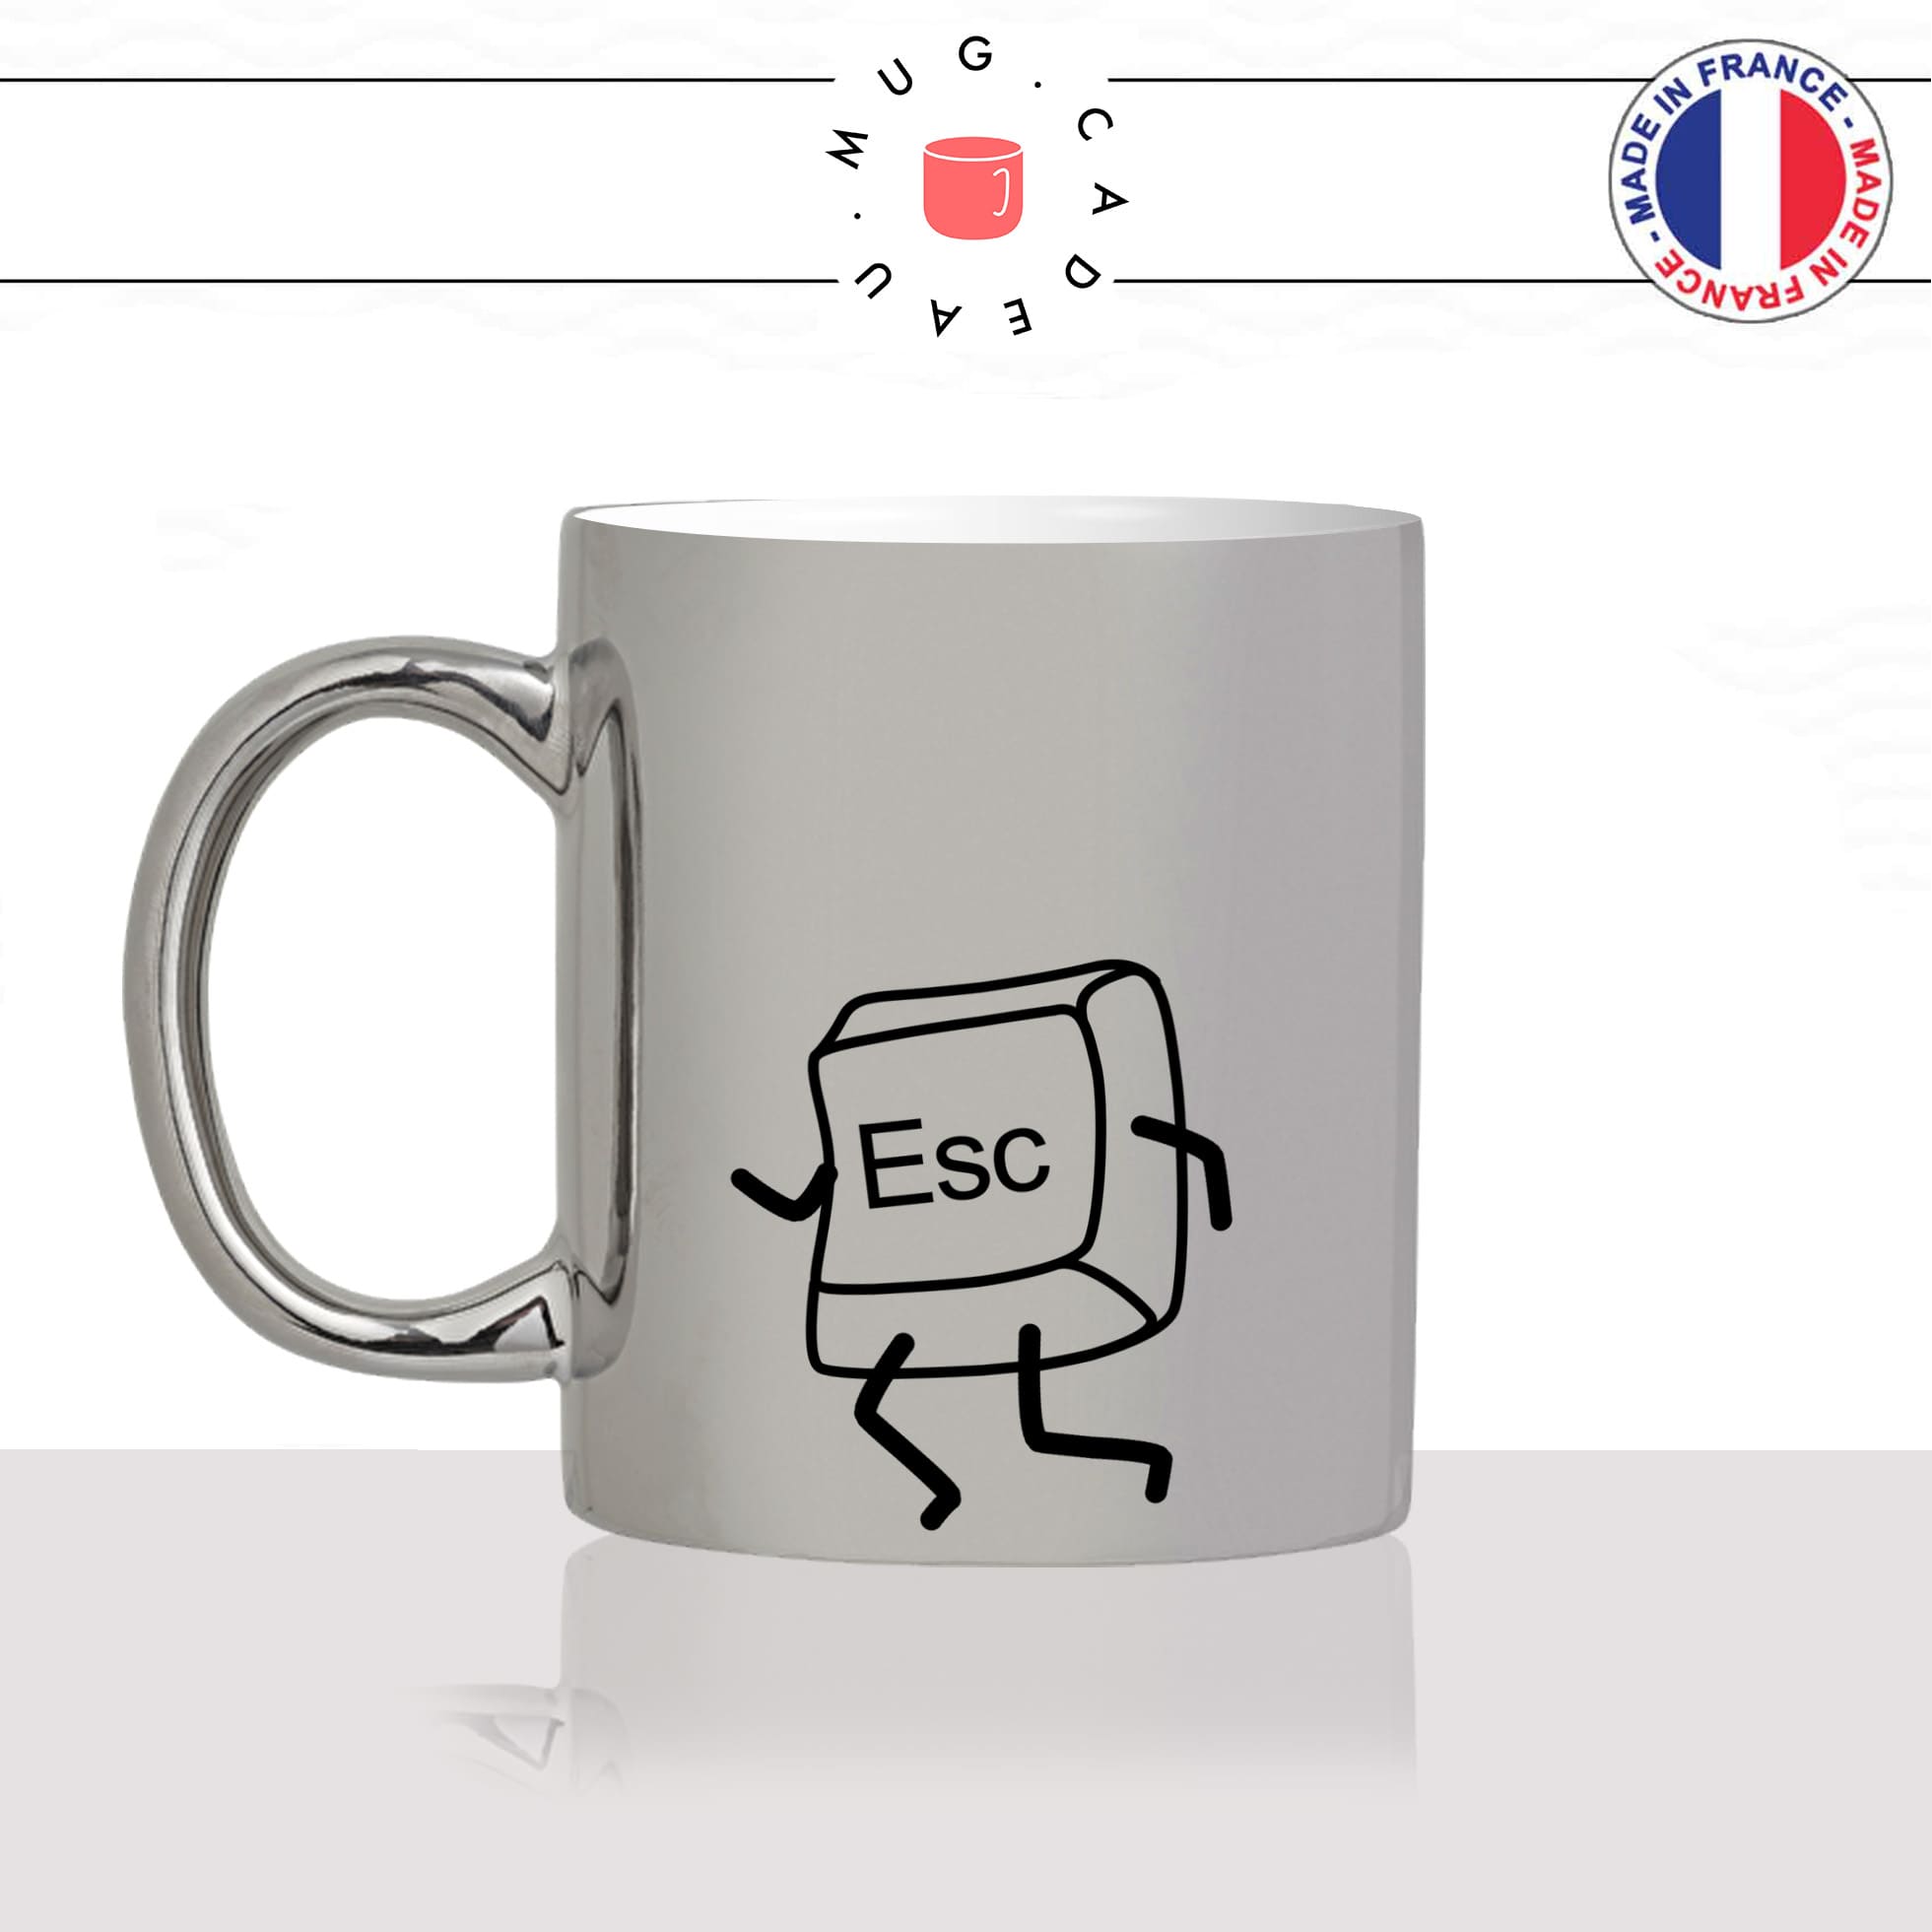 mug-tasse-argent-argenté-silver-geek-nerd-touche-clavier-gamer-esc-escape-echappe-collegue-matin-pause-idée-cadeau-fun-cool-café-thé